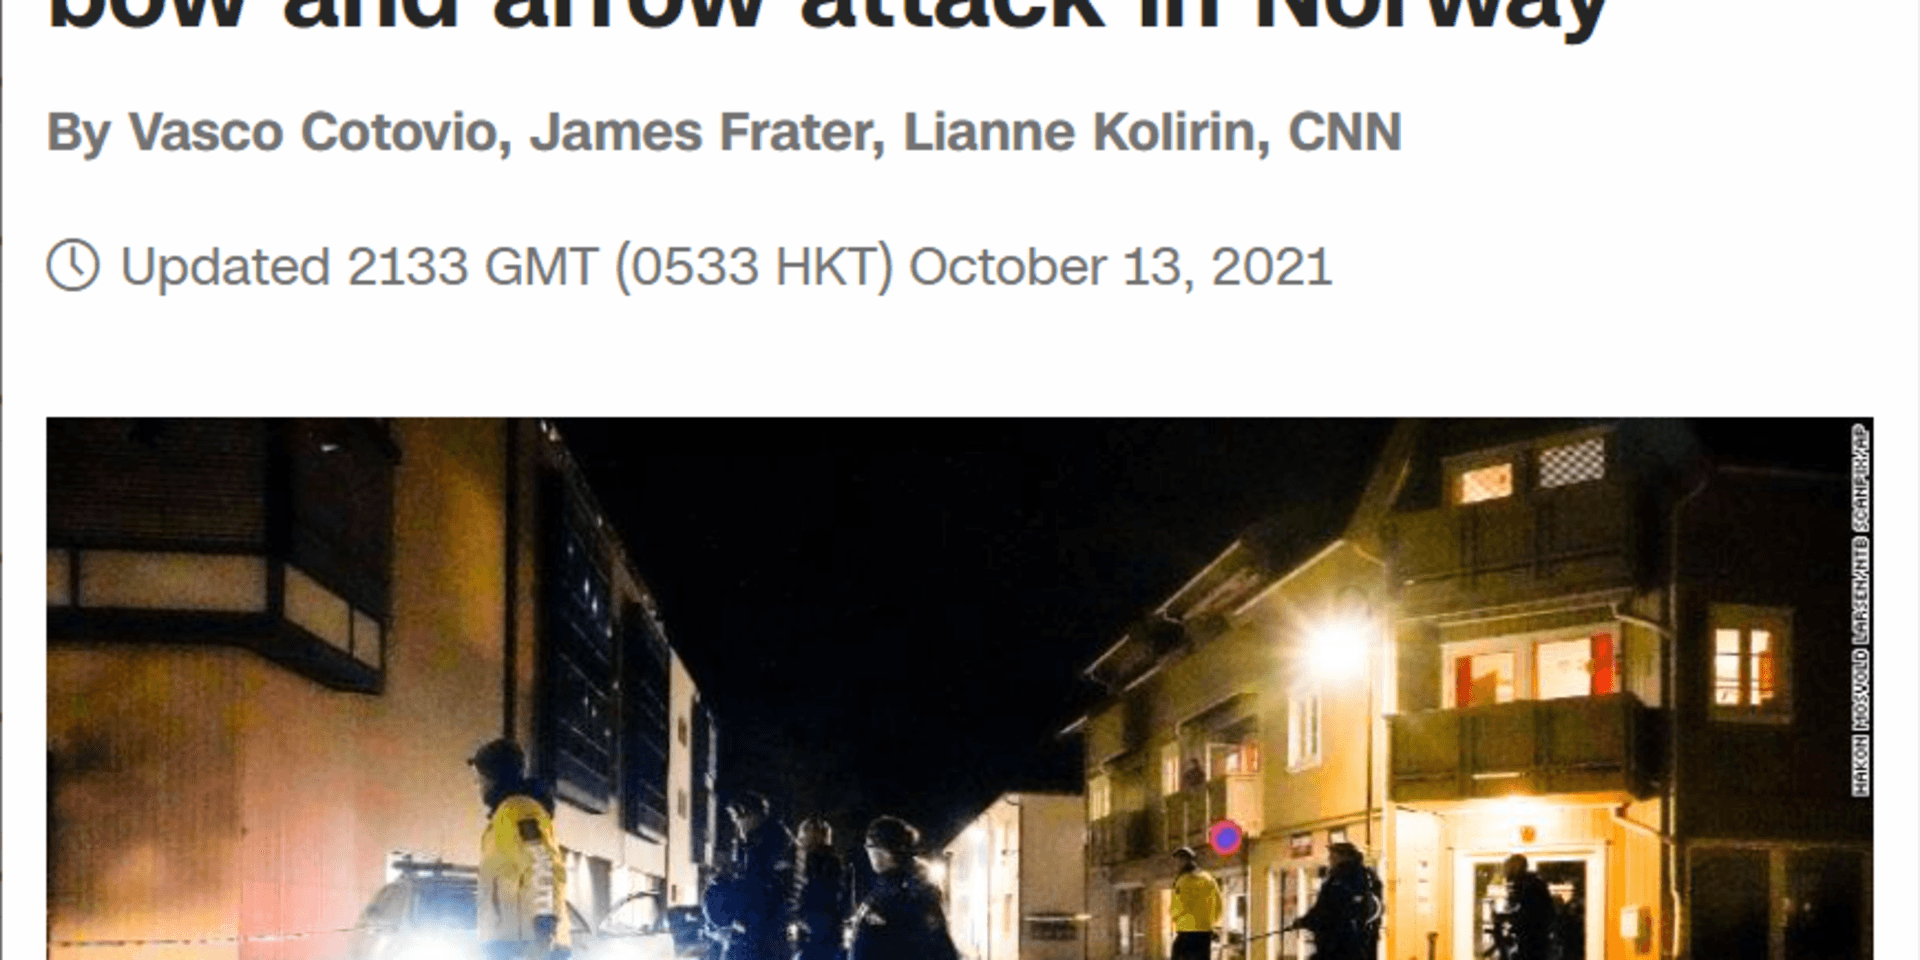 CNN, Al Jazeera, och The Guardian är några av de internationella medier som rapporterat om pilbågsattacken i Kongsberg.